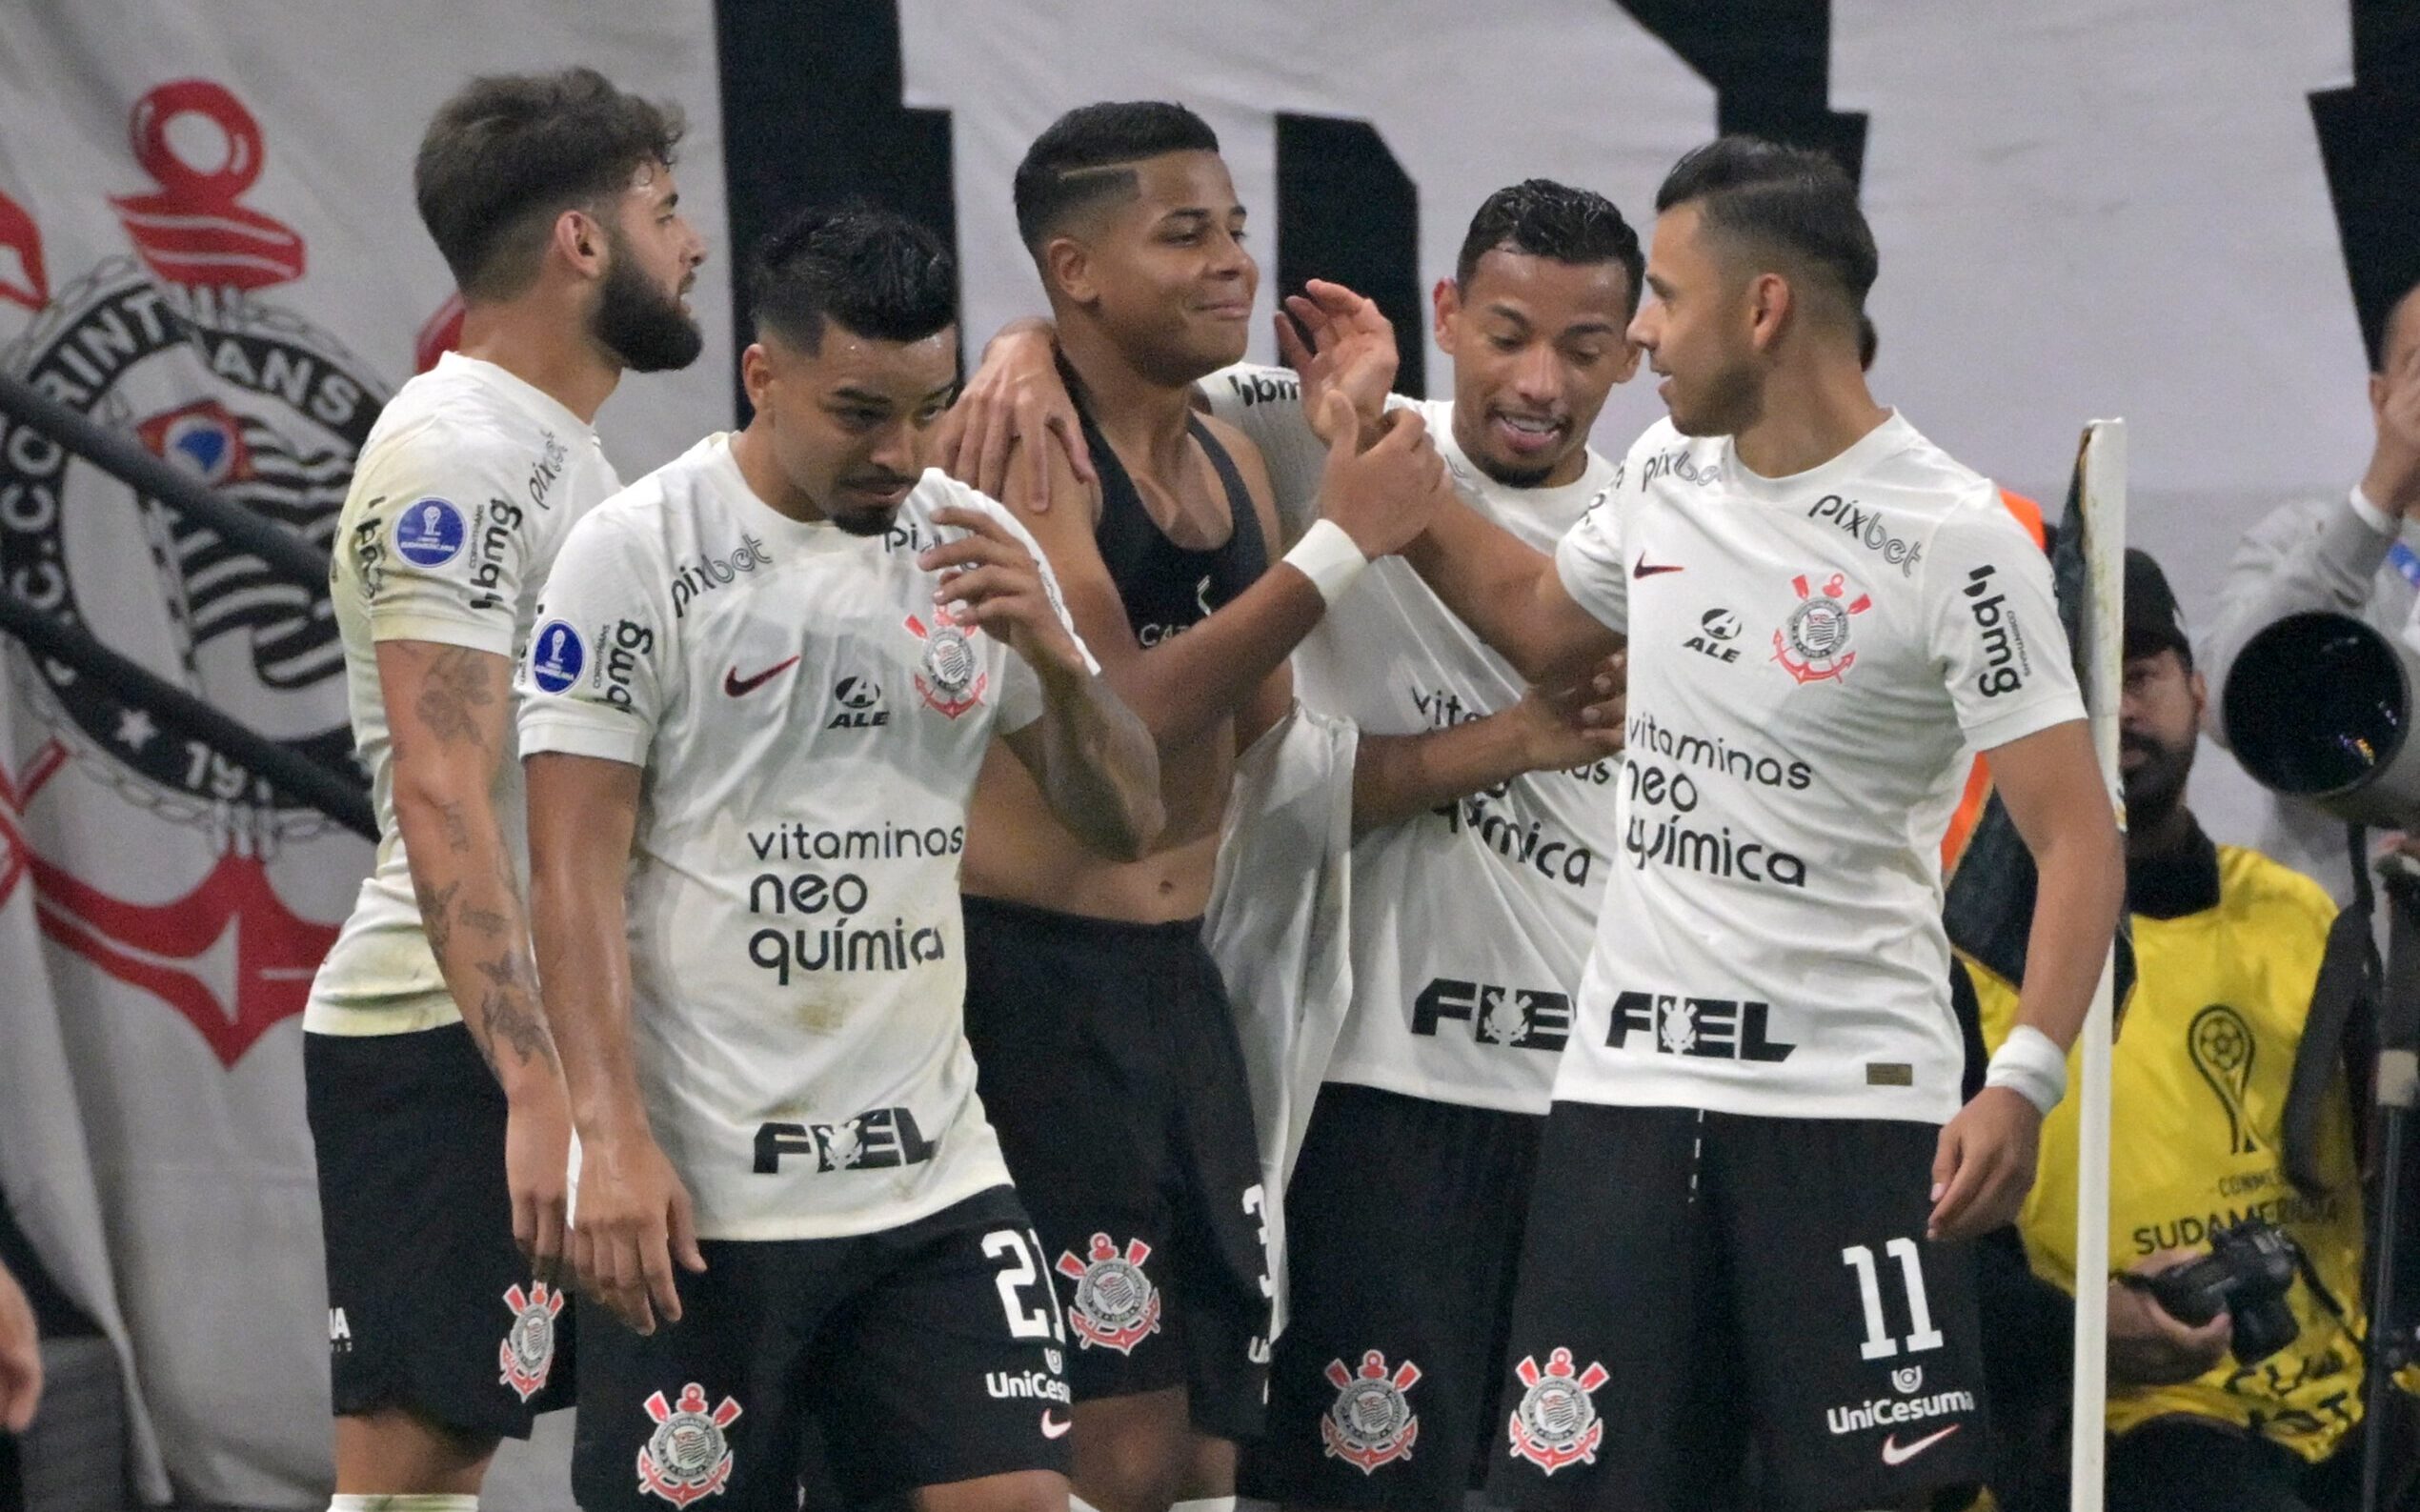 Veja como Luxemburgo busca lapidar Wesley, revelação do Corinthians -  Gazeta Esportiva